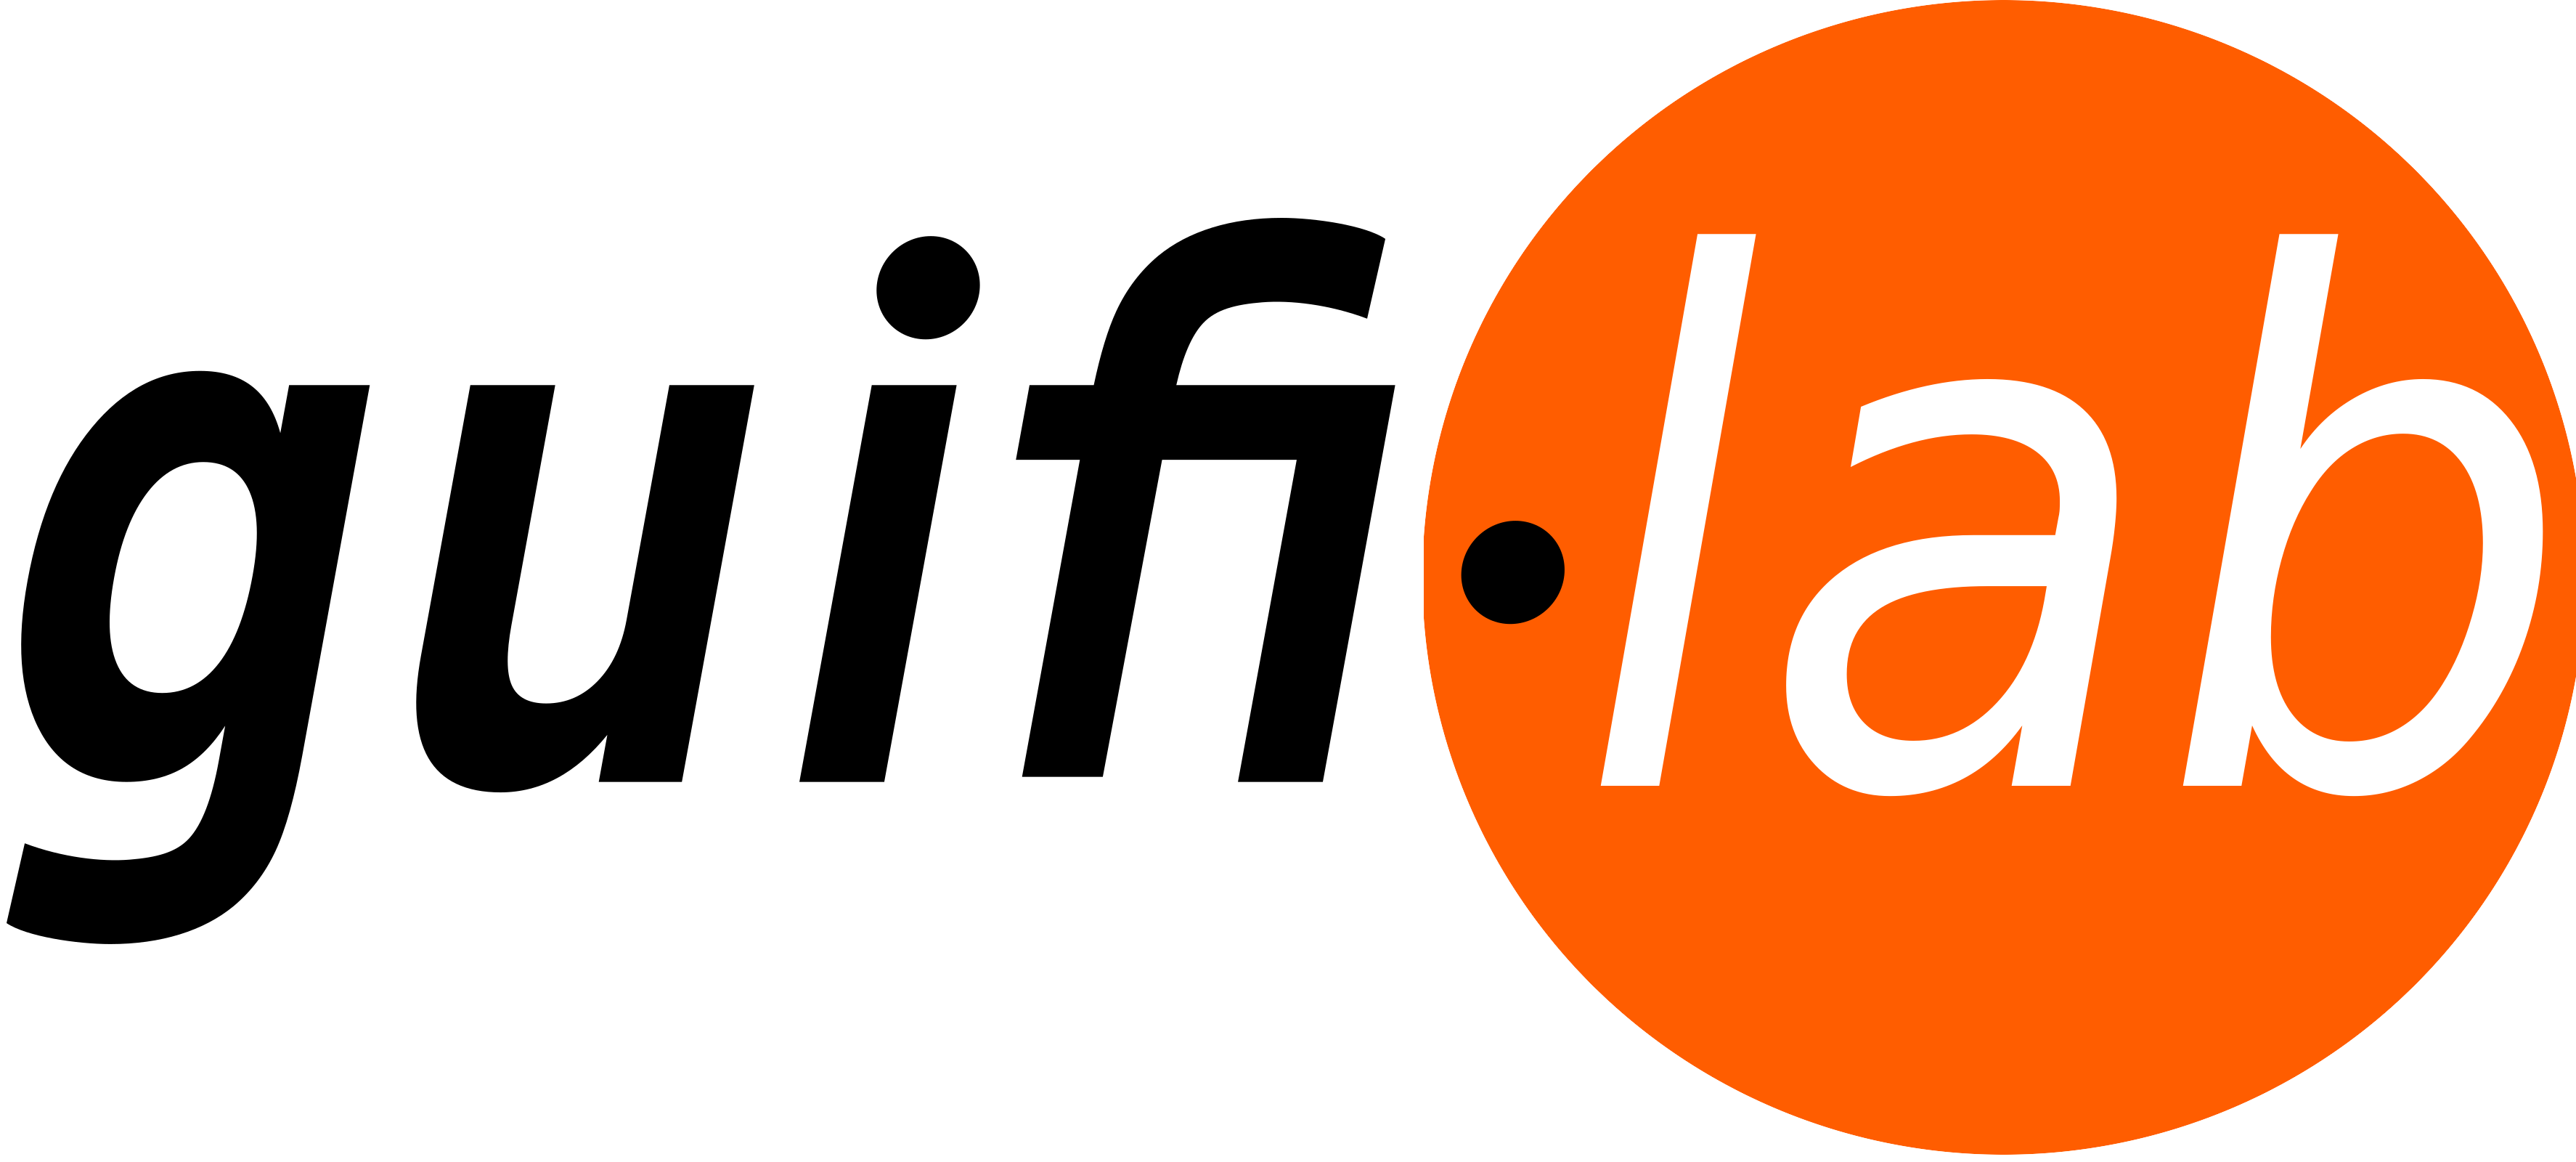 guifiLab (logo)